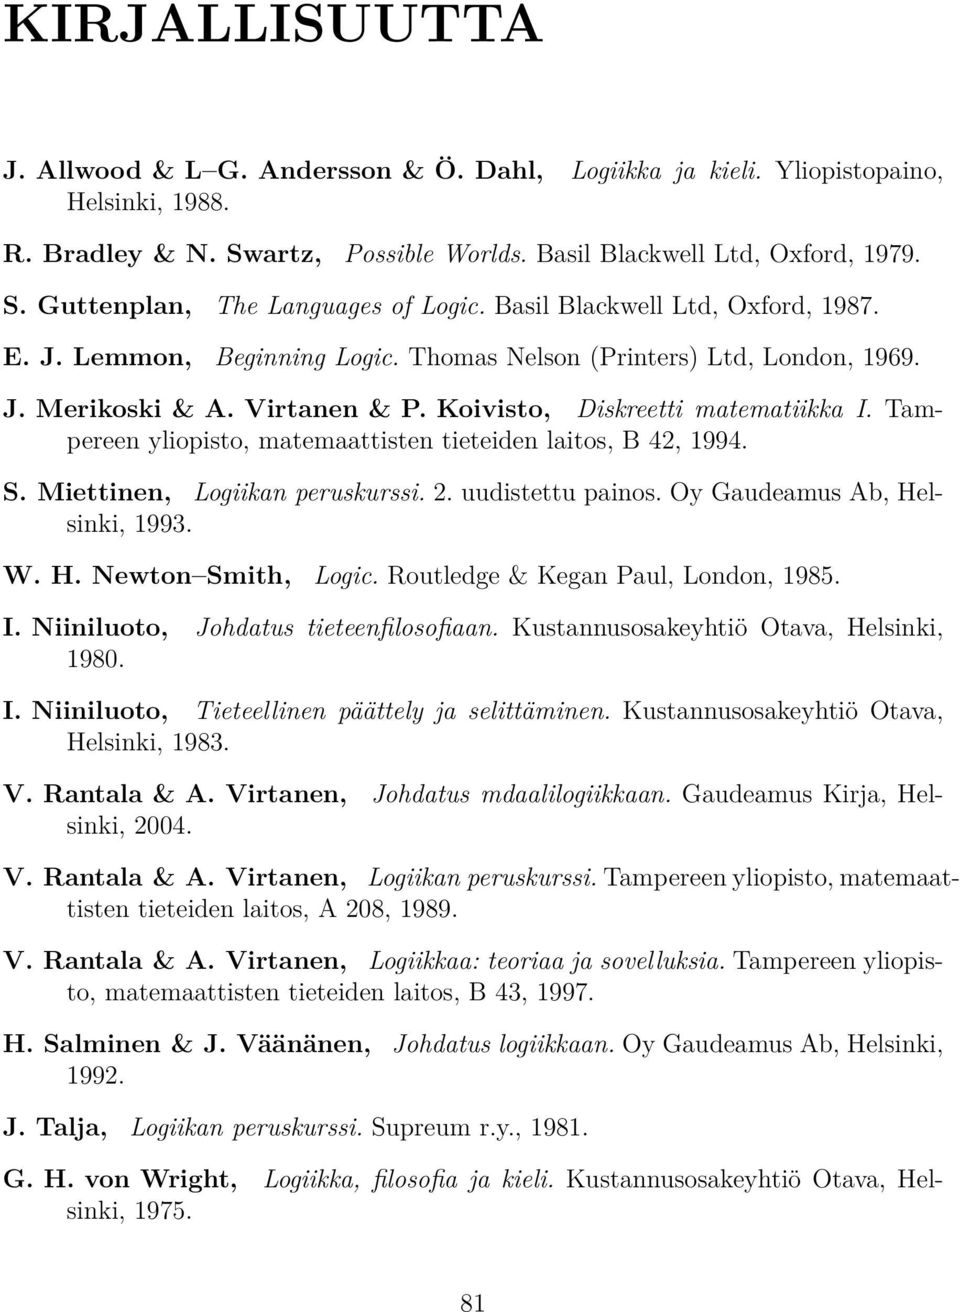 matemaattisten tieteiden laitos, B 42, 1994 S Miettinen, Logiikan peruskurssi 2 uudistettu painos Oy Gaudeamus b, Helsinki, 1993 W H Newton Smith, Logic Routledge & Kegan Paul, London, 1985 I